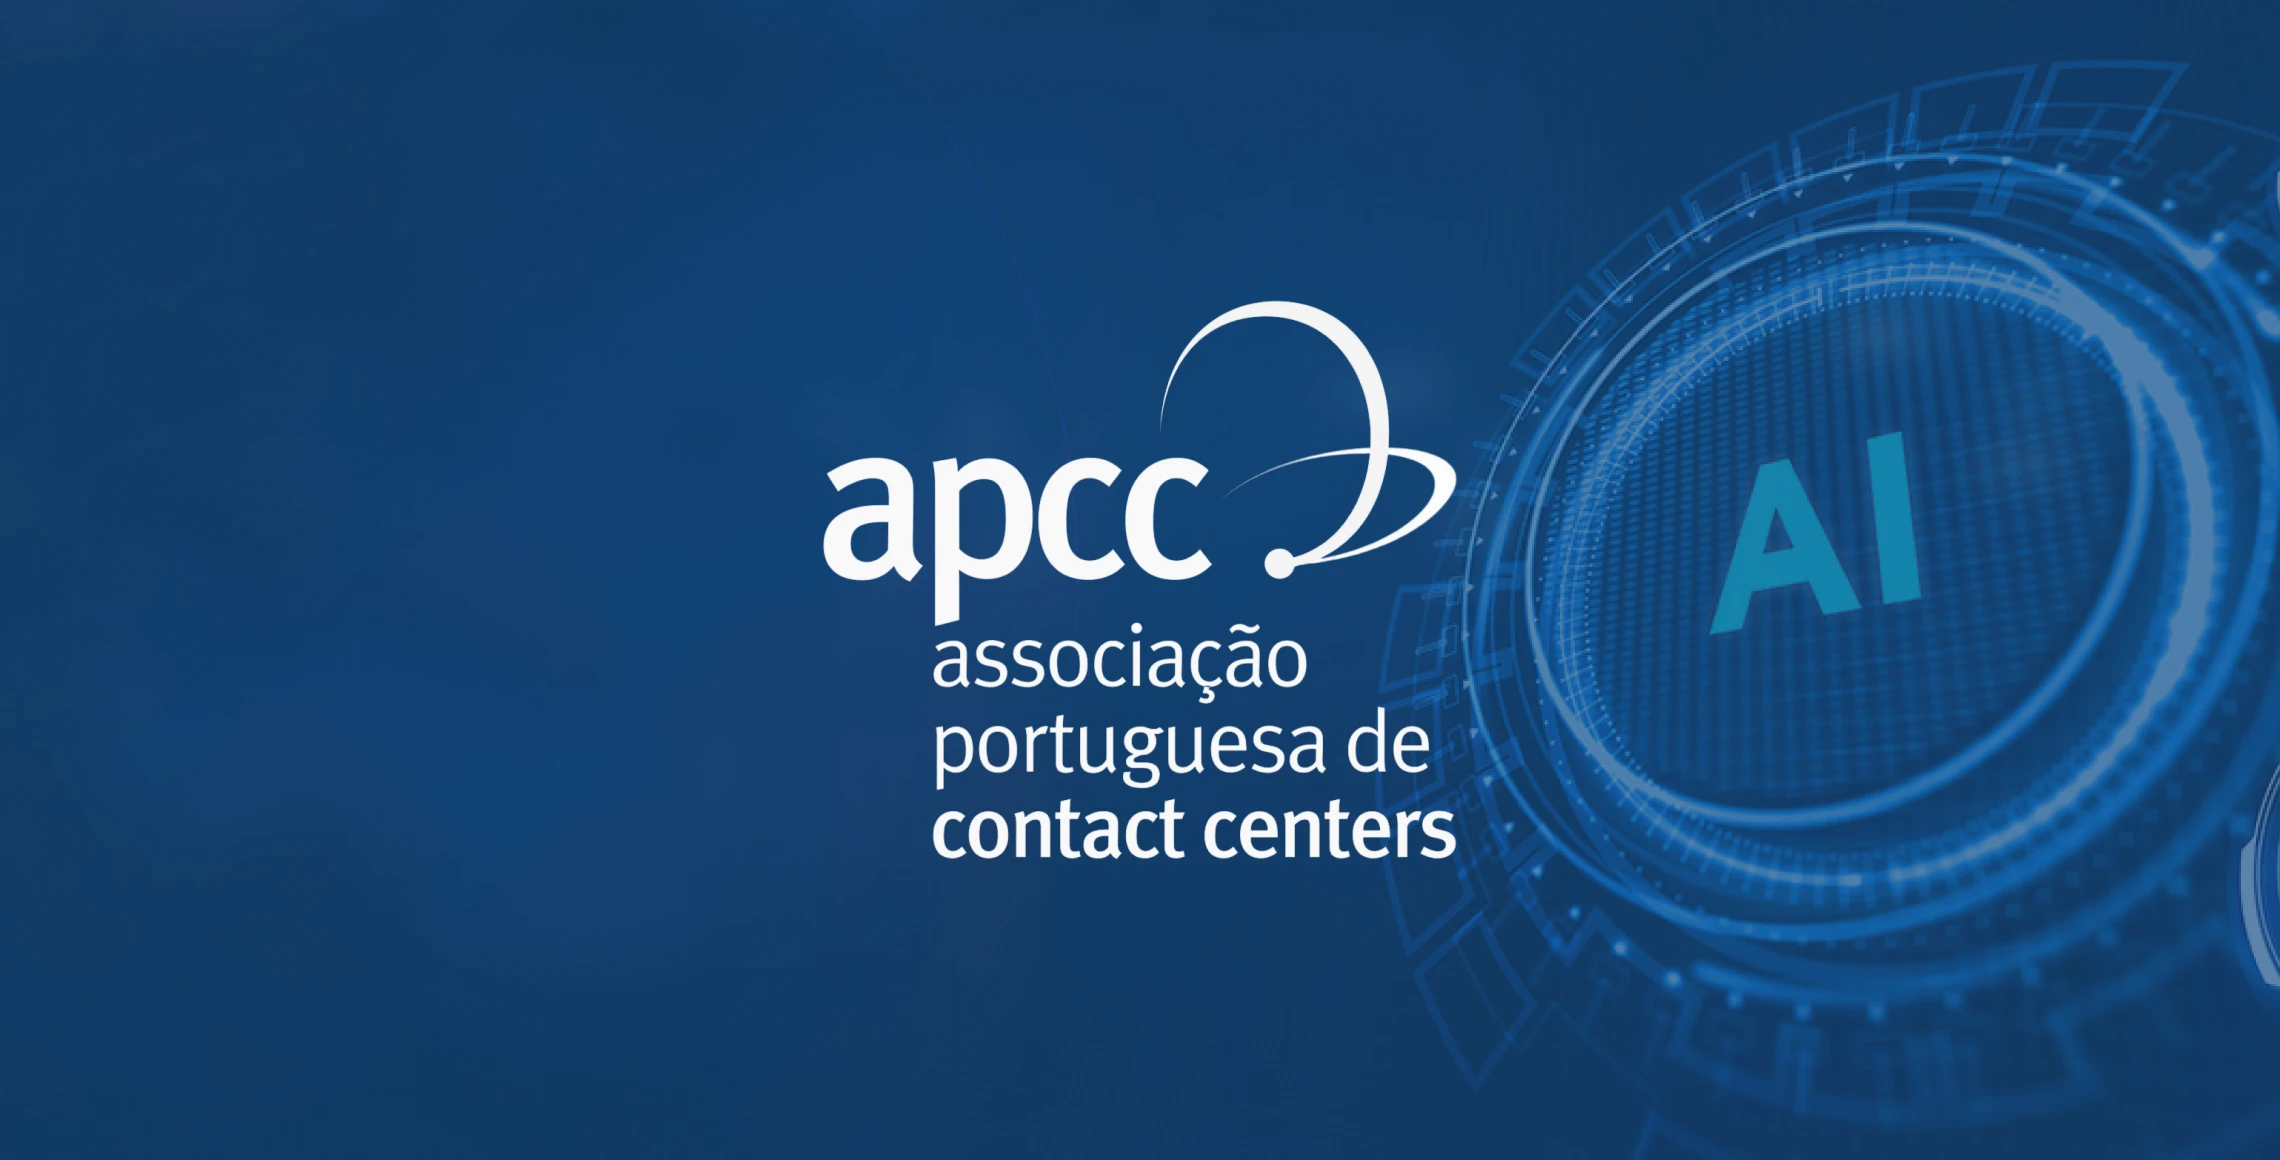 Apcc Conference In Porto